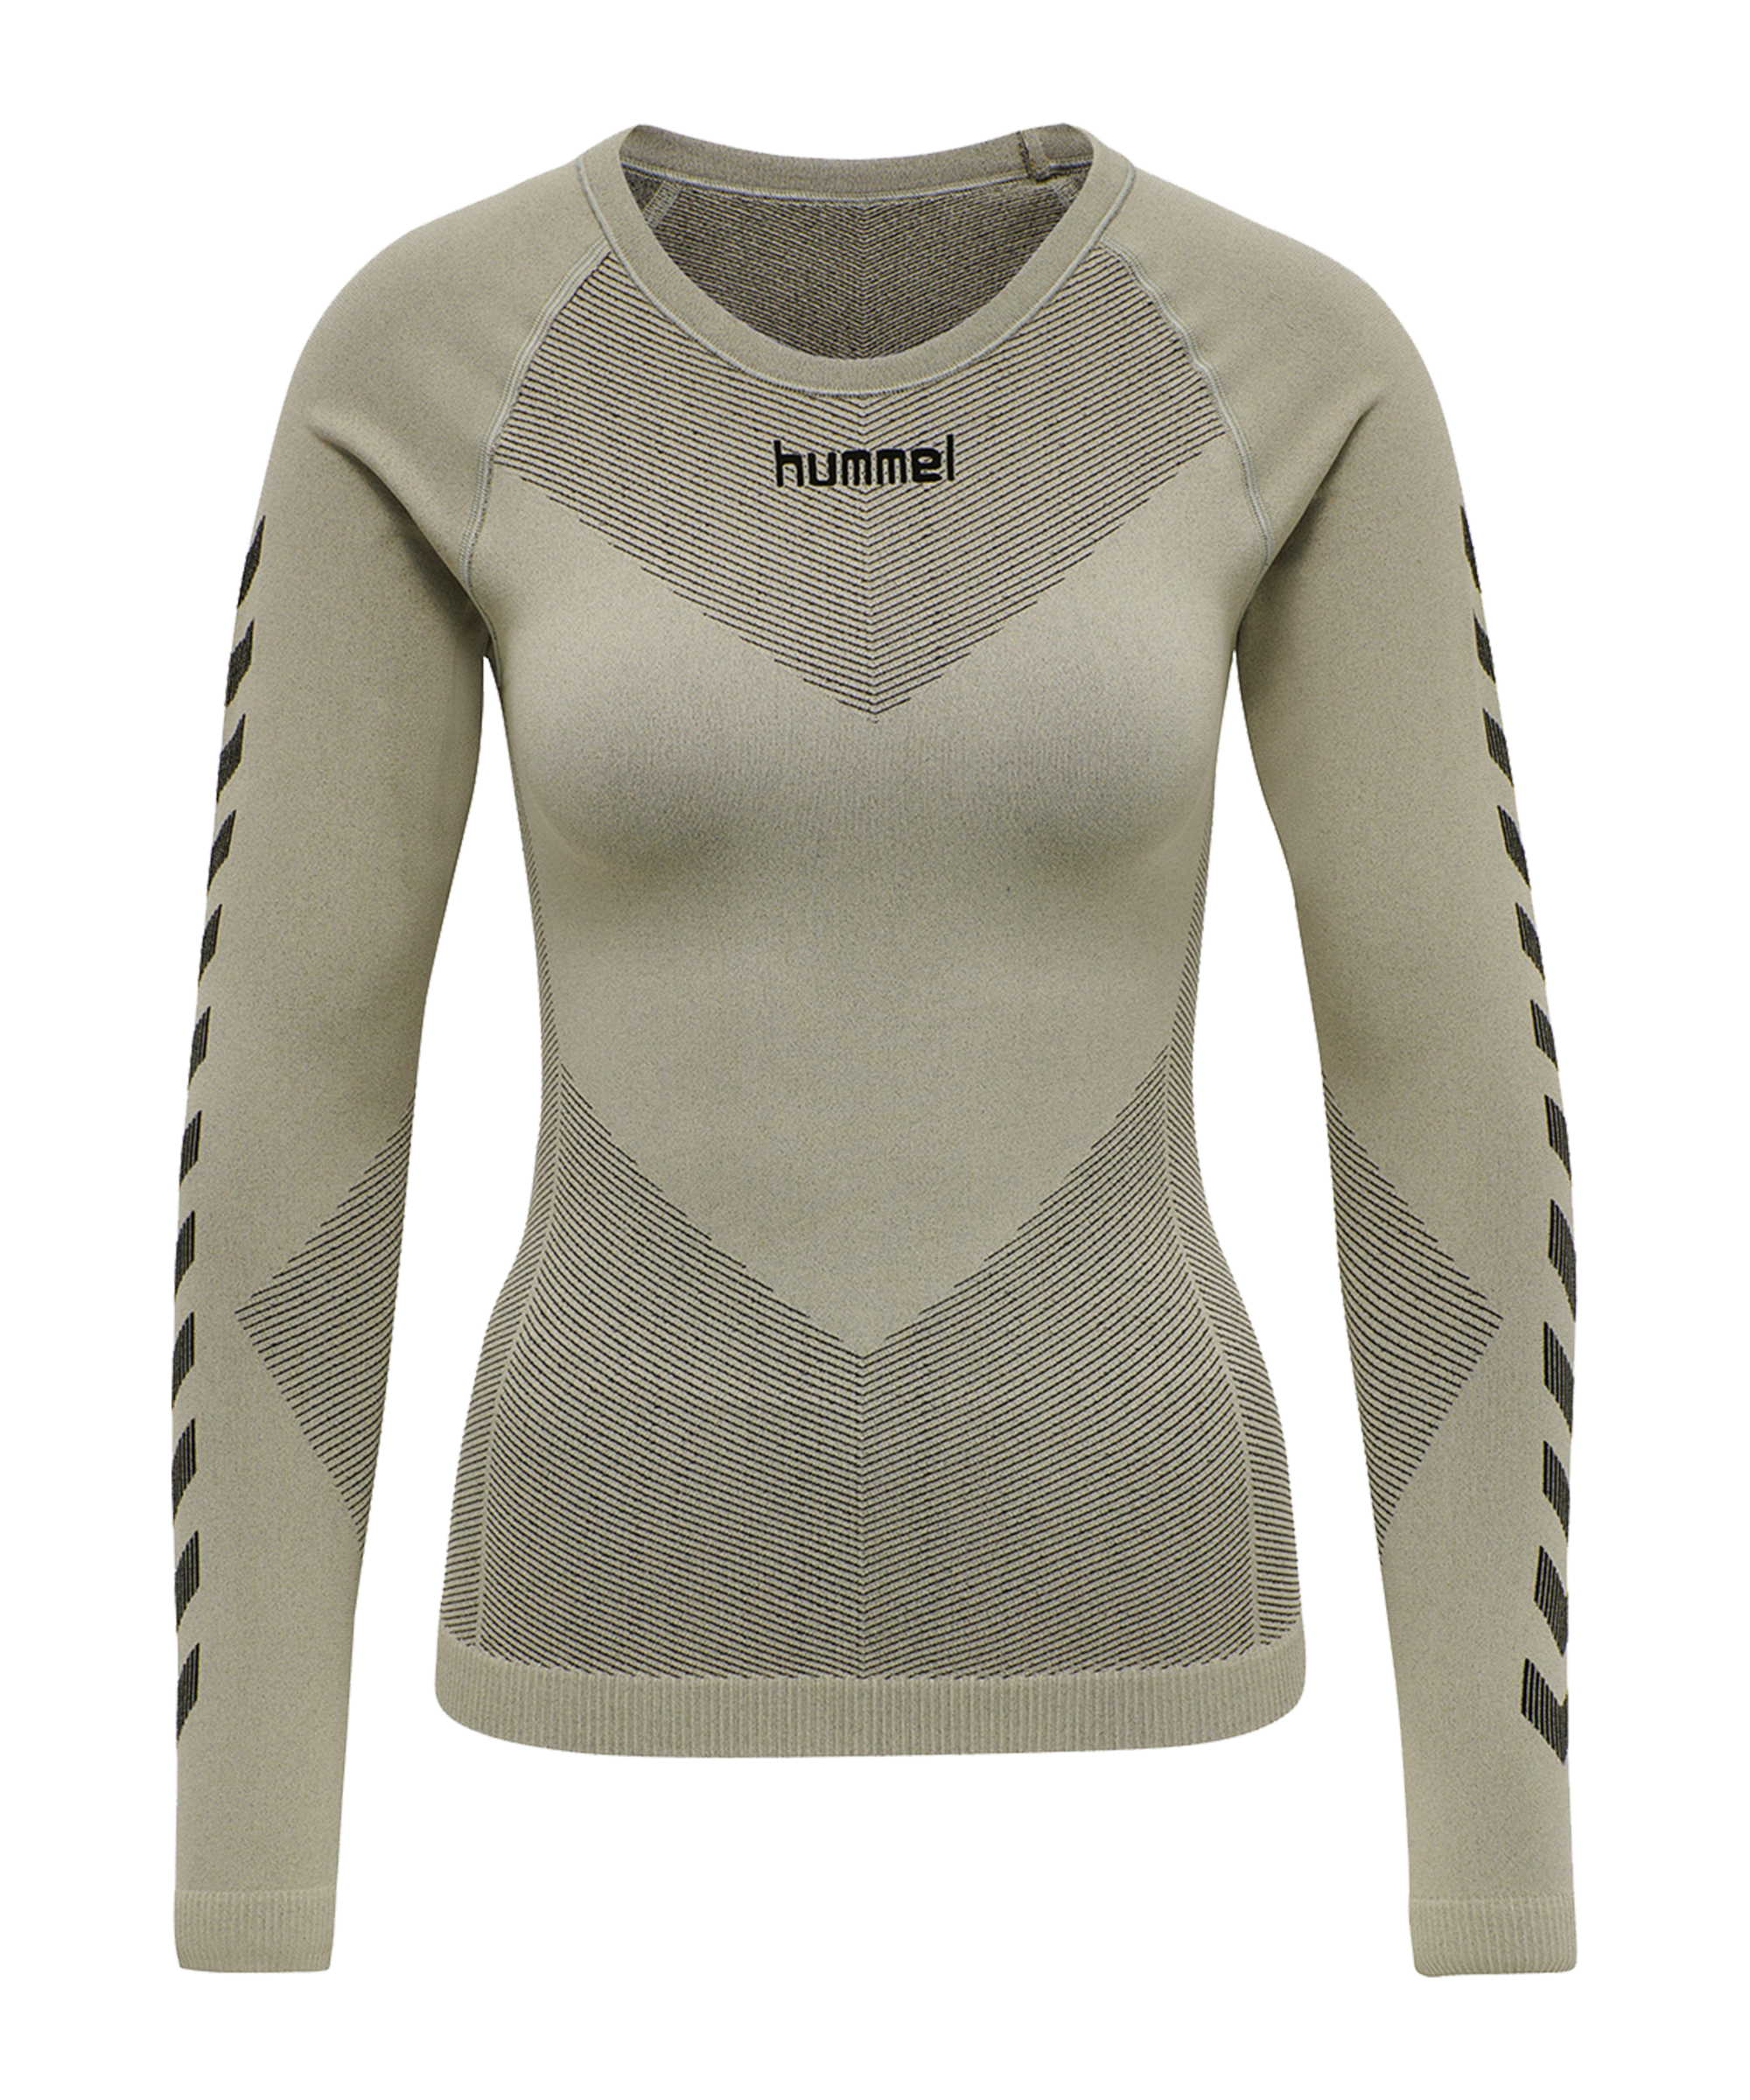 T-shirt Hummel FIRST SEAMLESS JERSEY L/S WOMAN